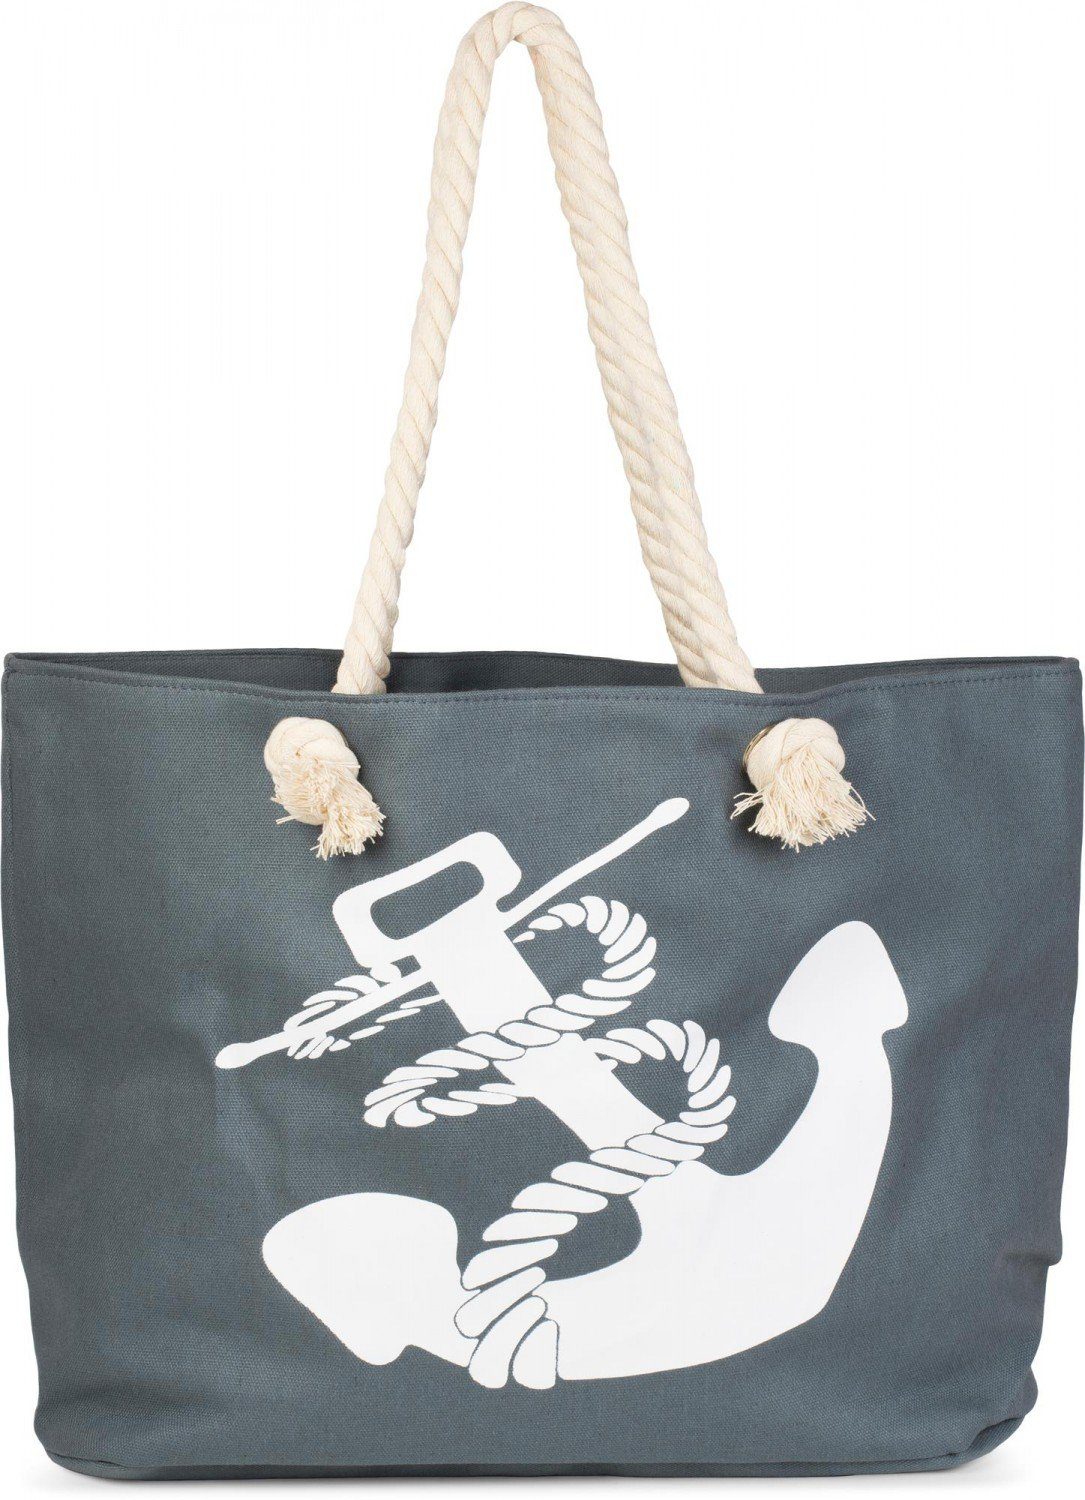 styleBREAKER Strandtasche (1-tlg), Flechtoptik Strandtasche mit Anker Print Dunkelgrau-Weiß